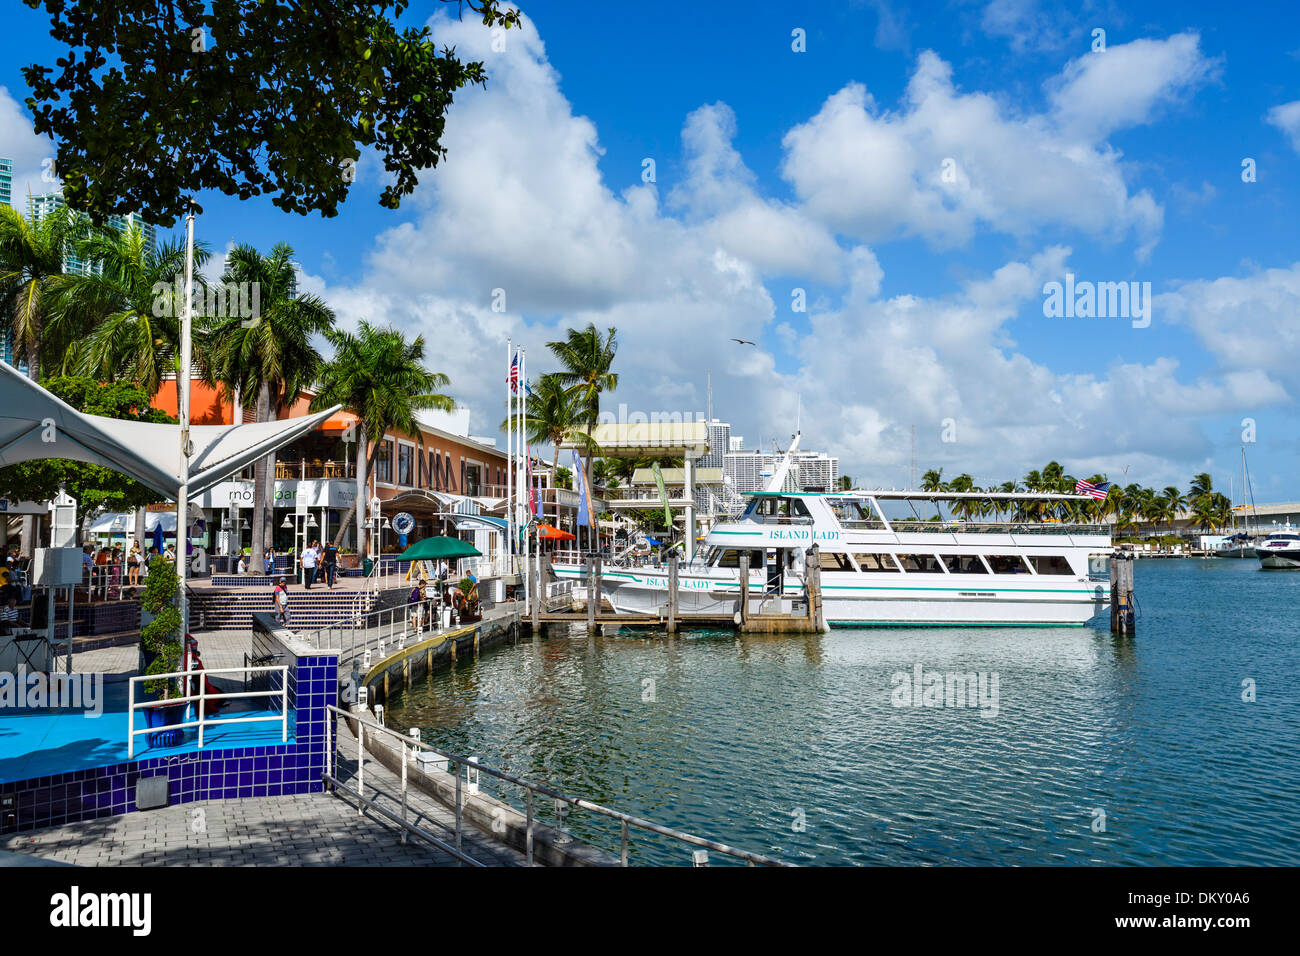 Le front de mer au marché de Bayside dans le centre-ville de Miami, Floride, USA Banque D'Images